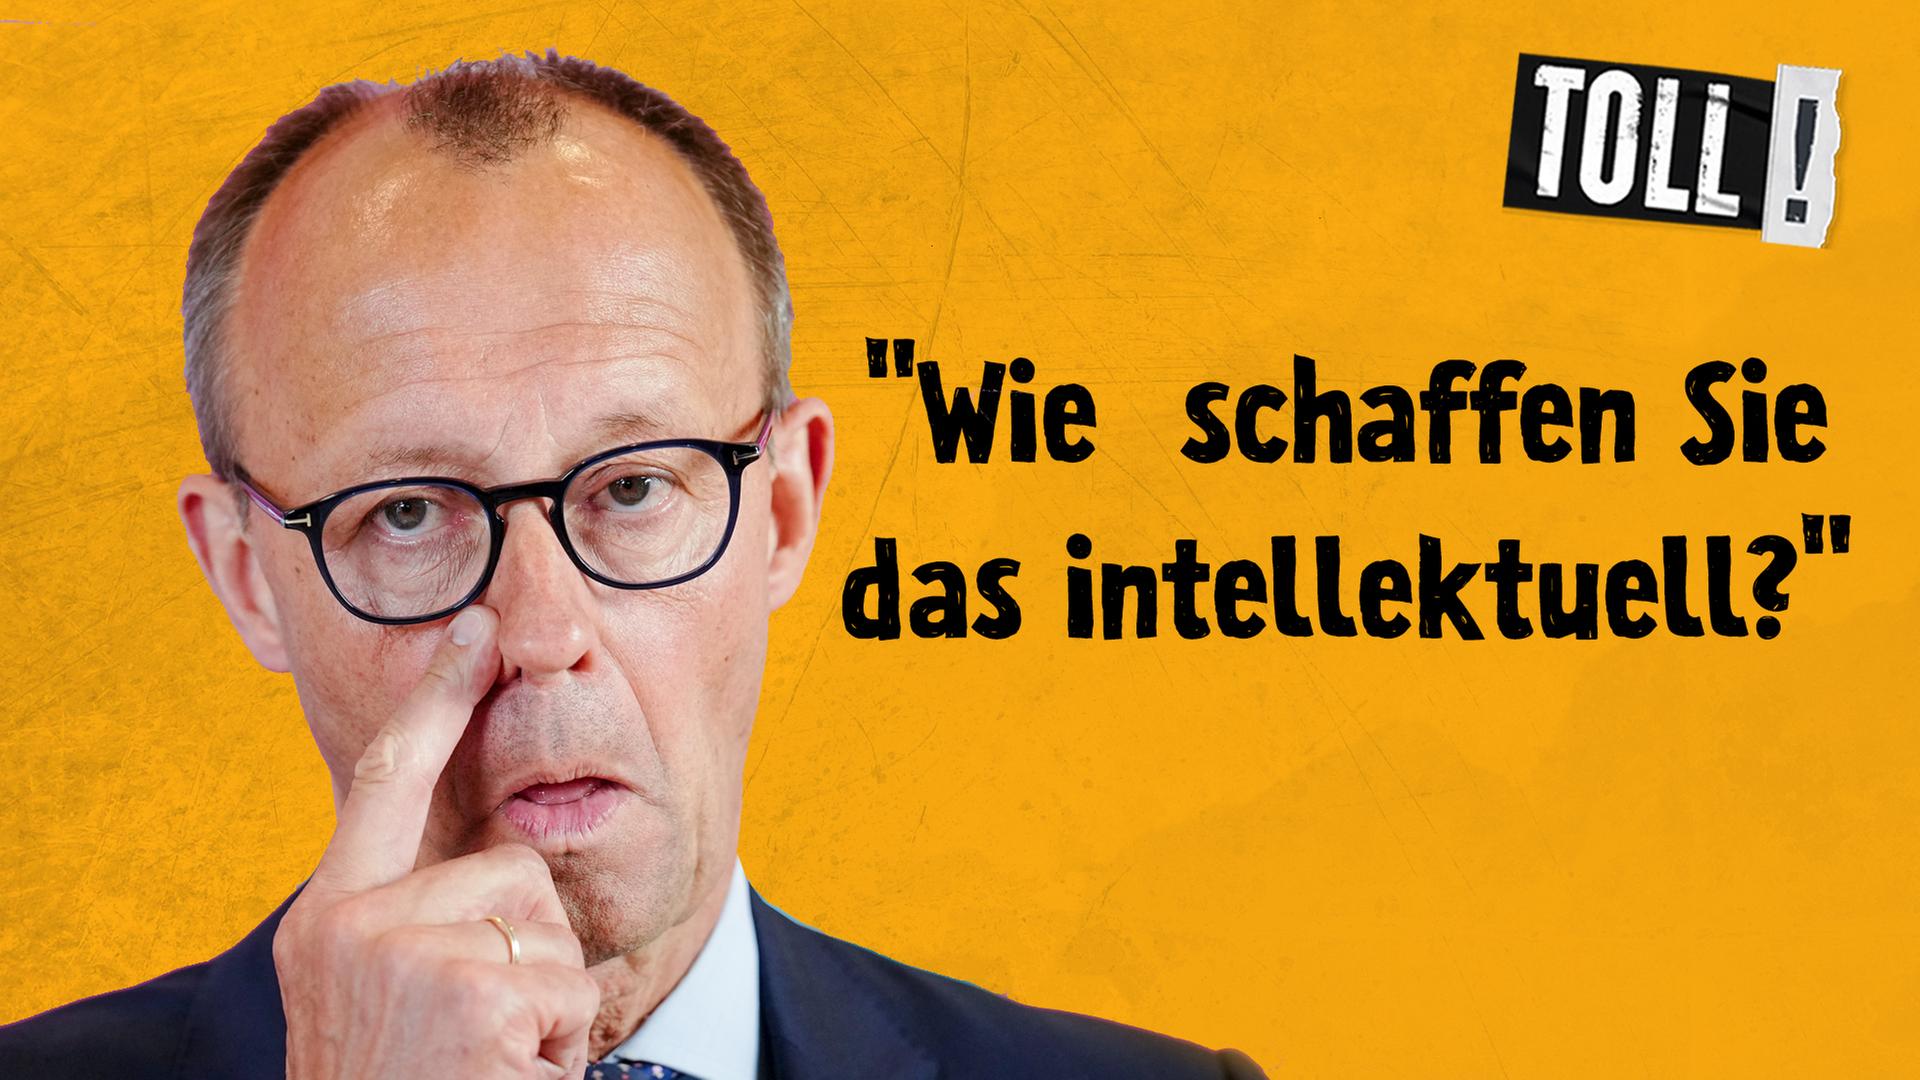 Bildmontage: CDU-Parteichef Friedrich Merz reibt sich mit dem Finger die Nase; Text: "Wie schaffen Sie das intellektuell?"